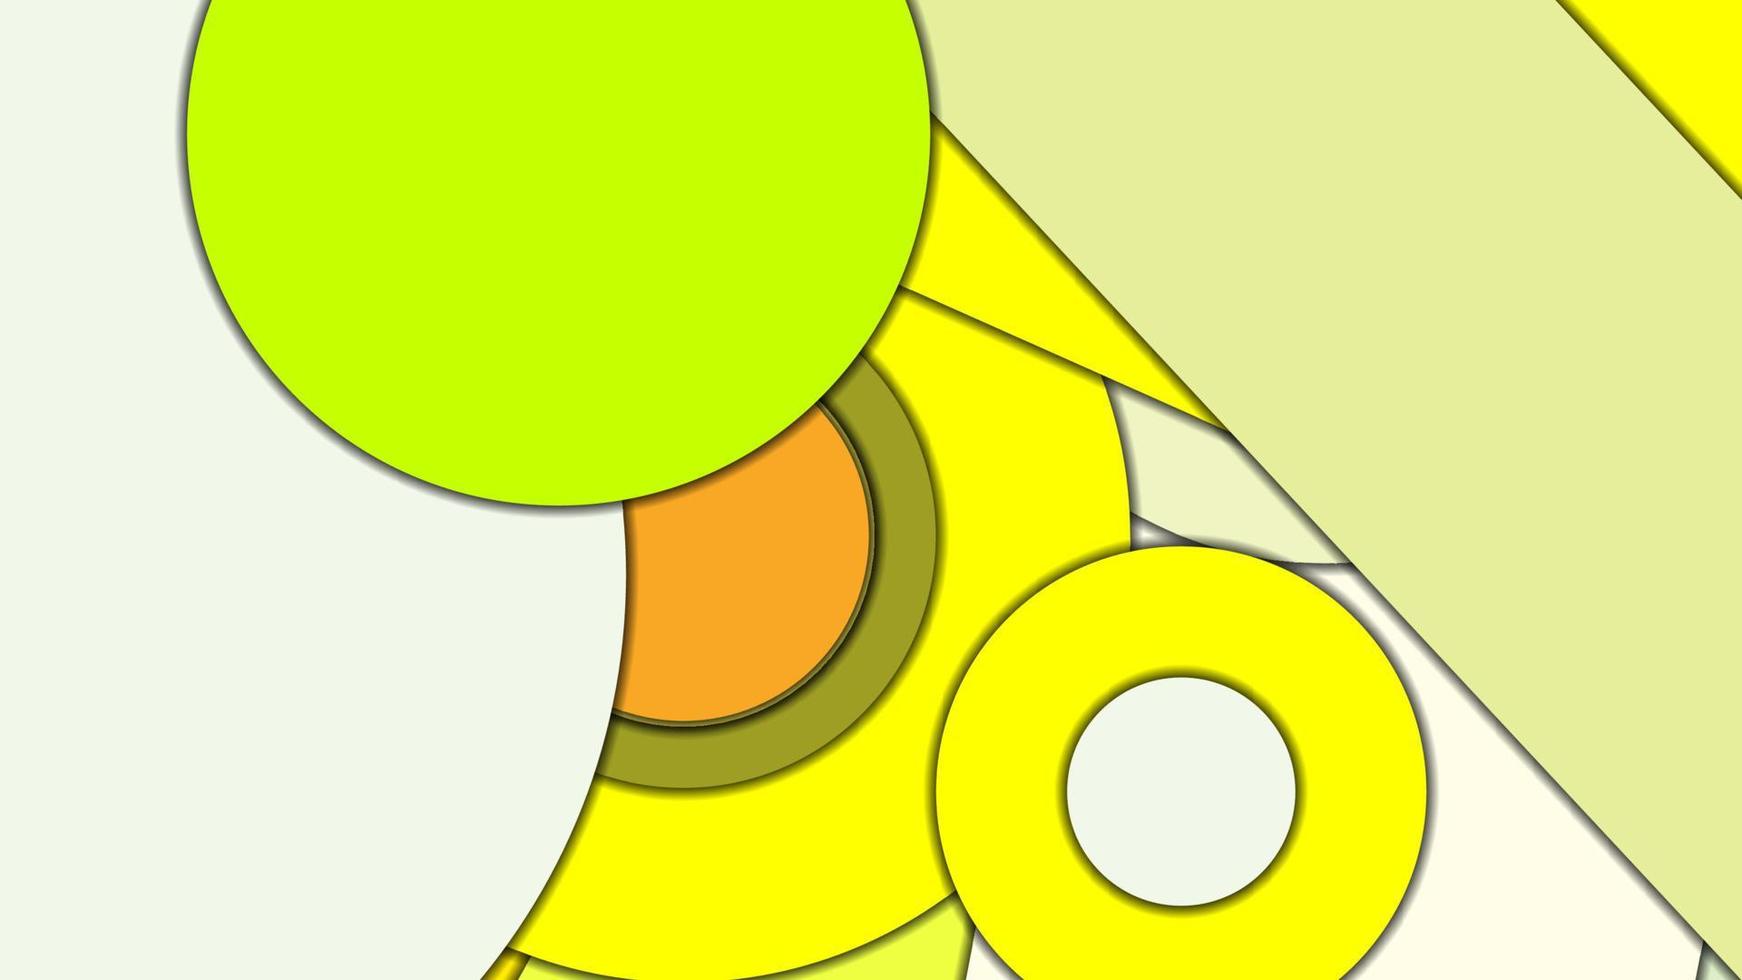 sfondo vettoriale geometrico astratto in stile design materiale con una tavolozza armonizzata limitata, con cerchi concentrici e rettangoli ruotati con ombre, imitando la carta tagliata.